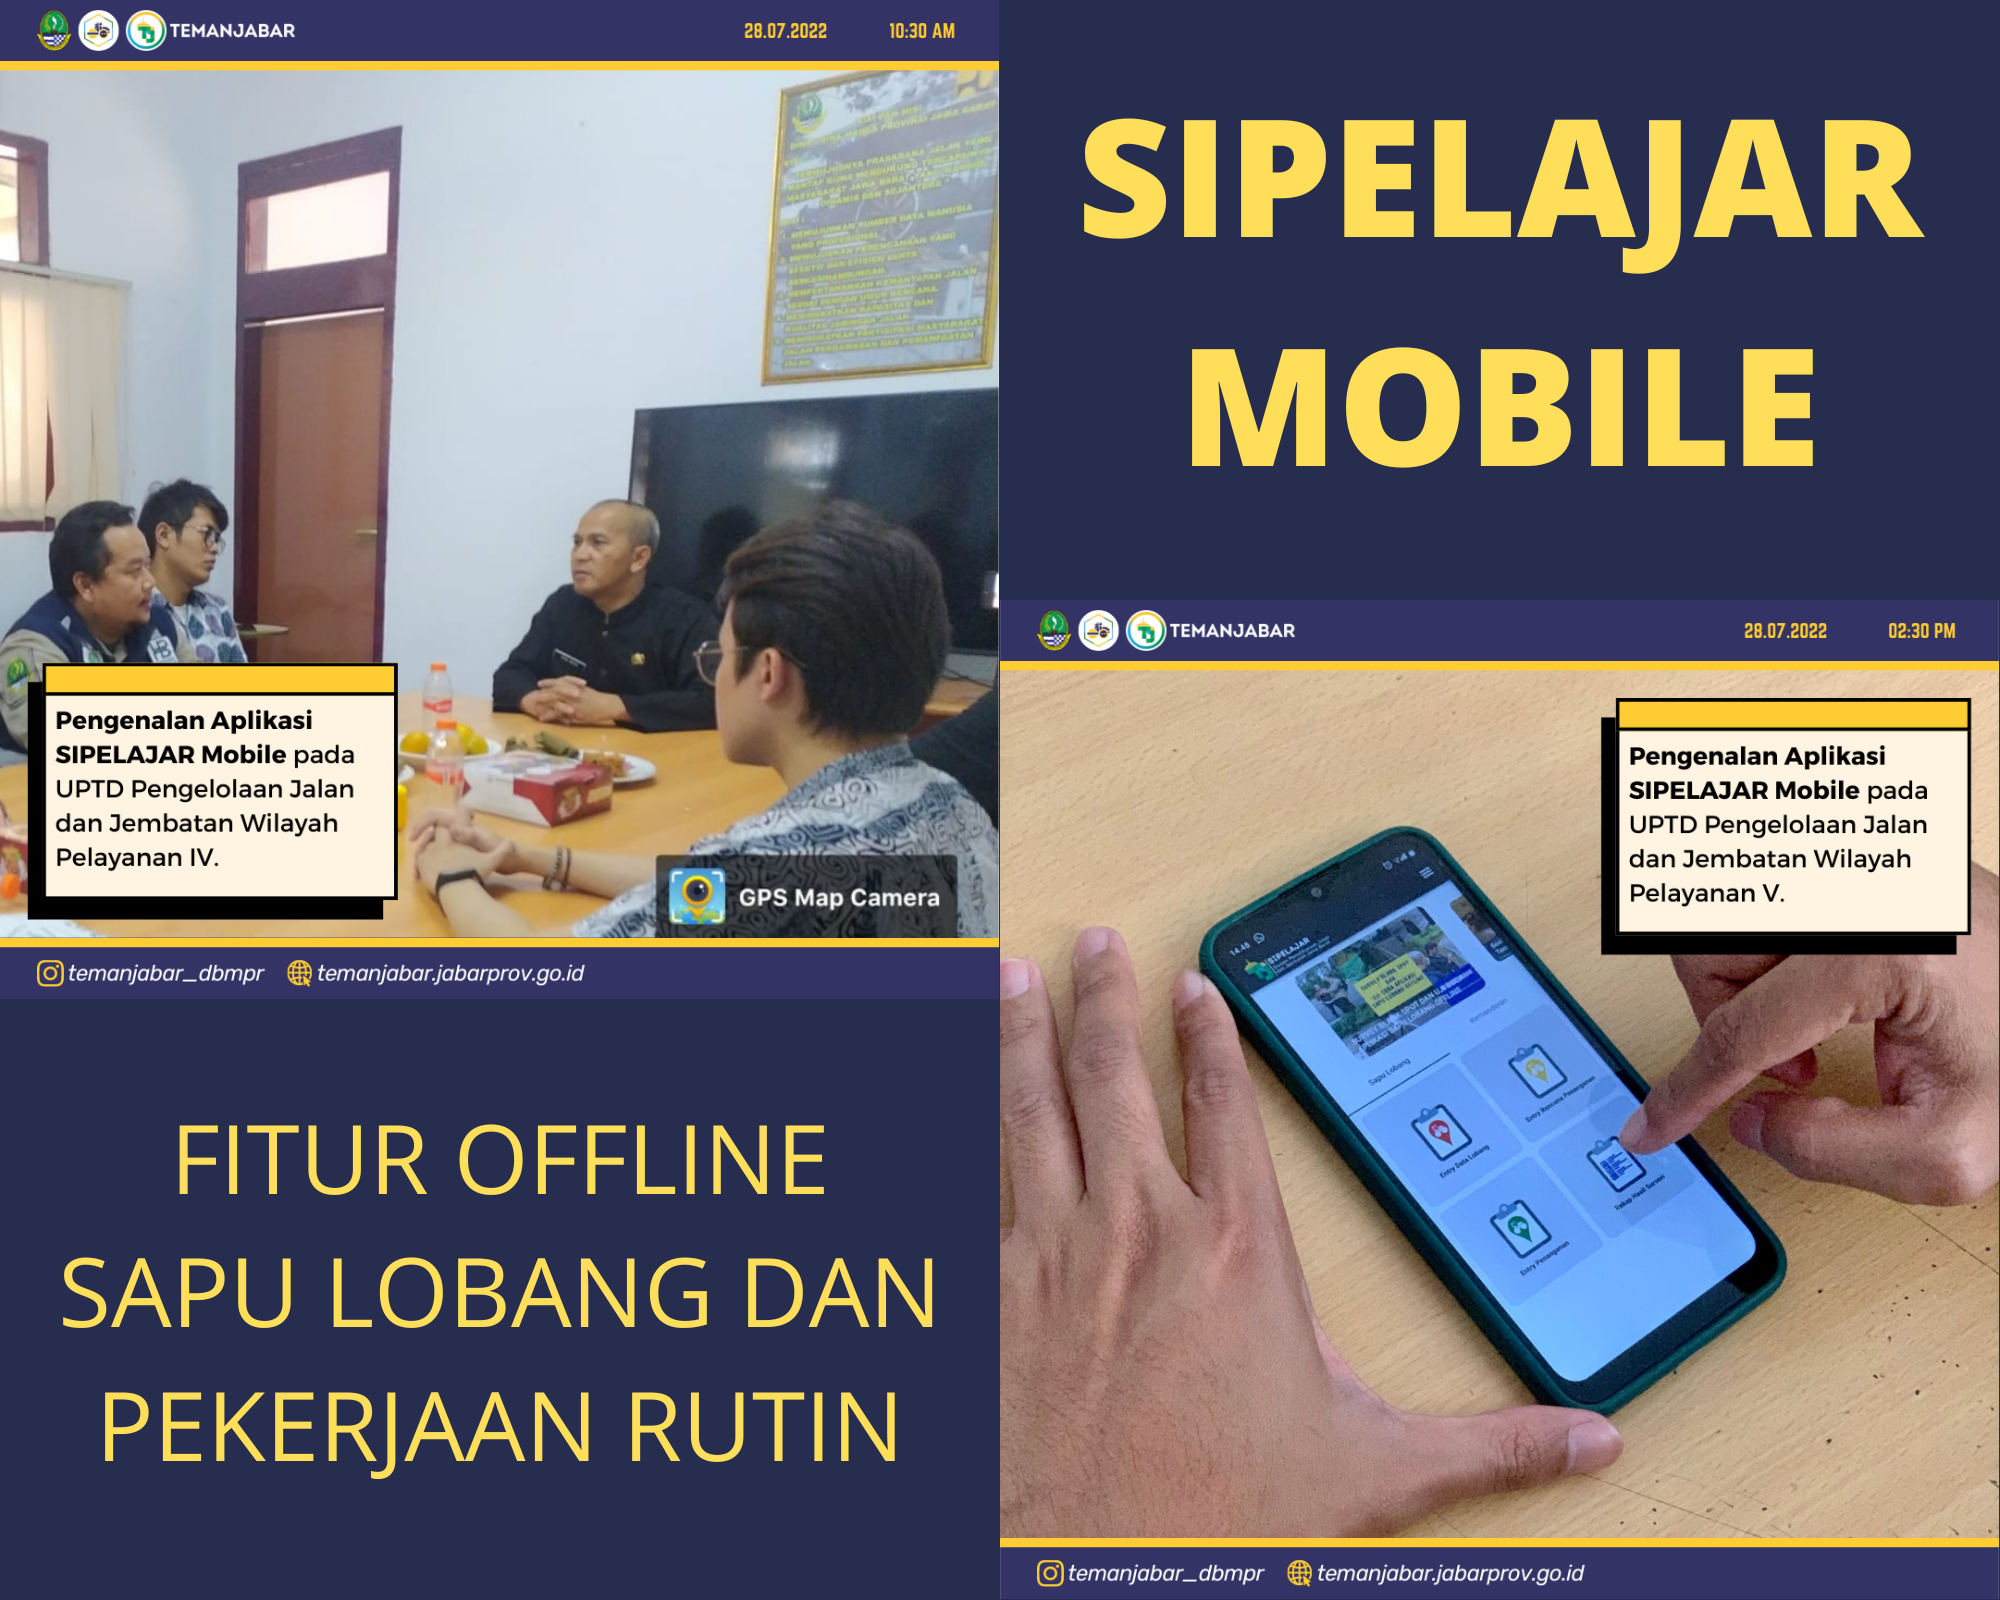 Pengenalan Aplikasi Sipelajar Mobile di UPTD Wil. Pel. IV dan V